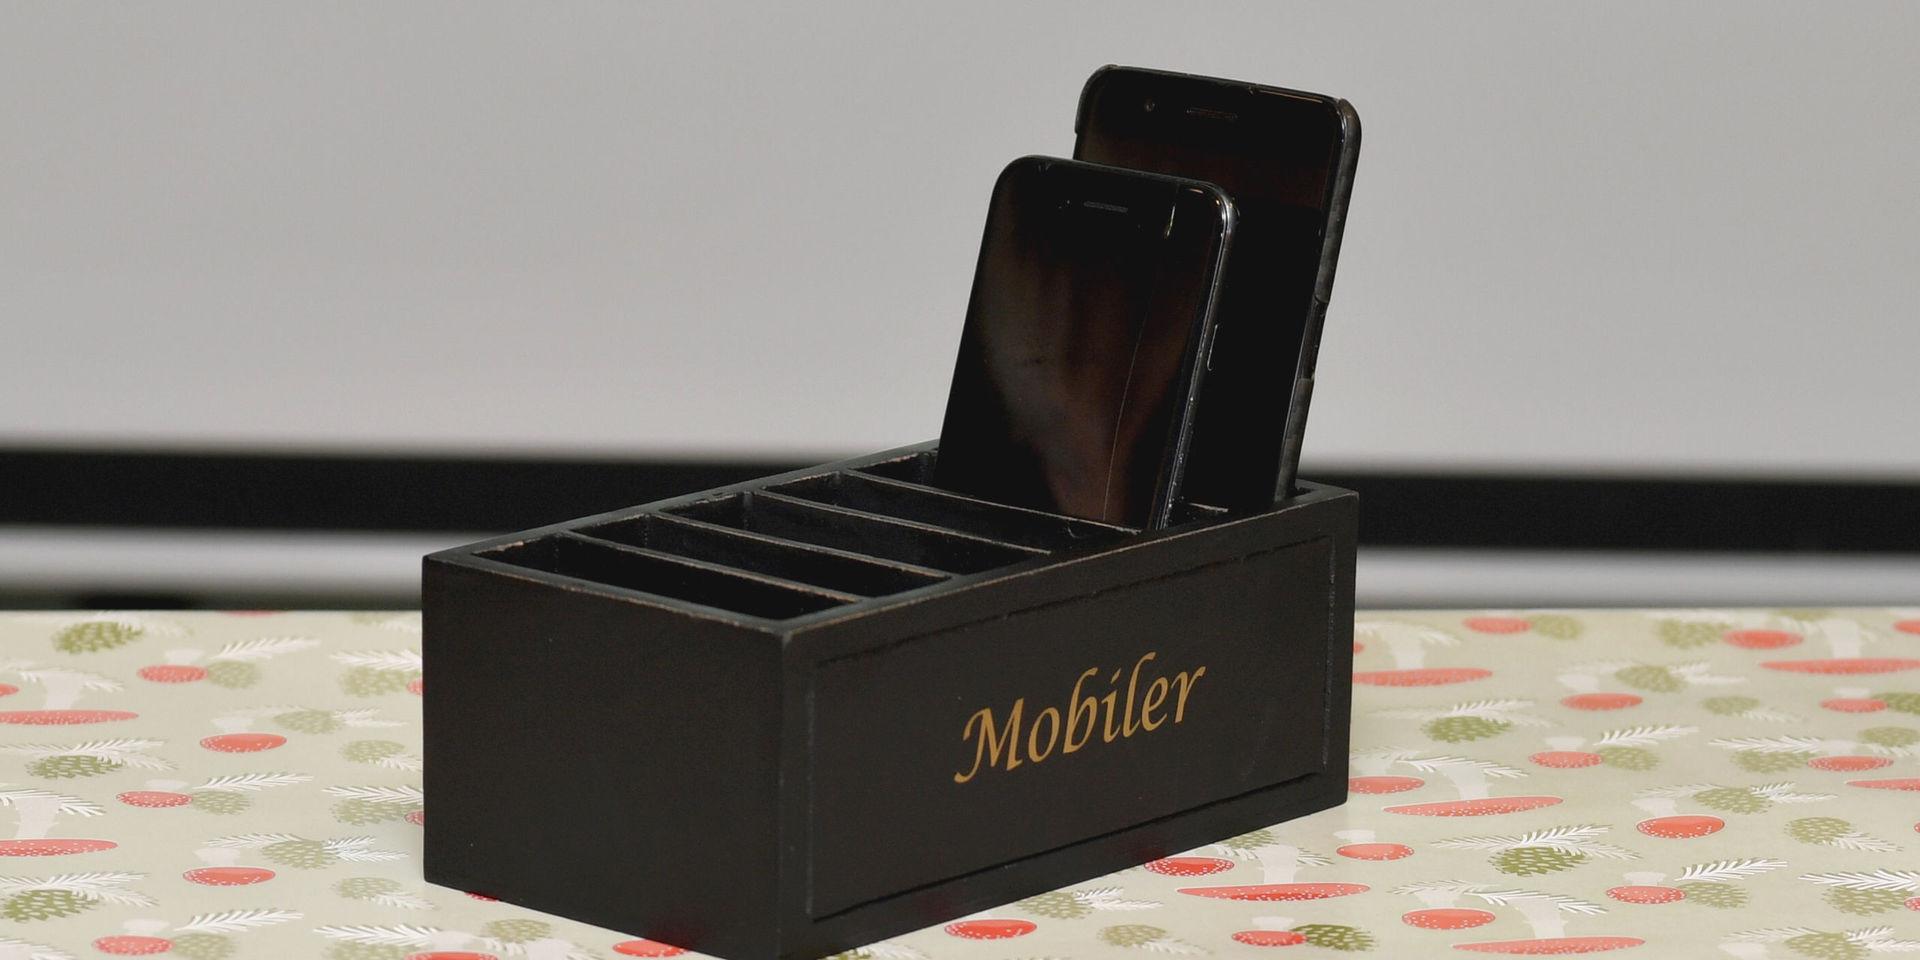 Årets julklapp som är en mobillåda, det vill säga en låda där du lägger din mobil så att du ska använda den mindre.